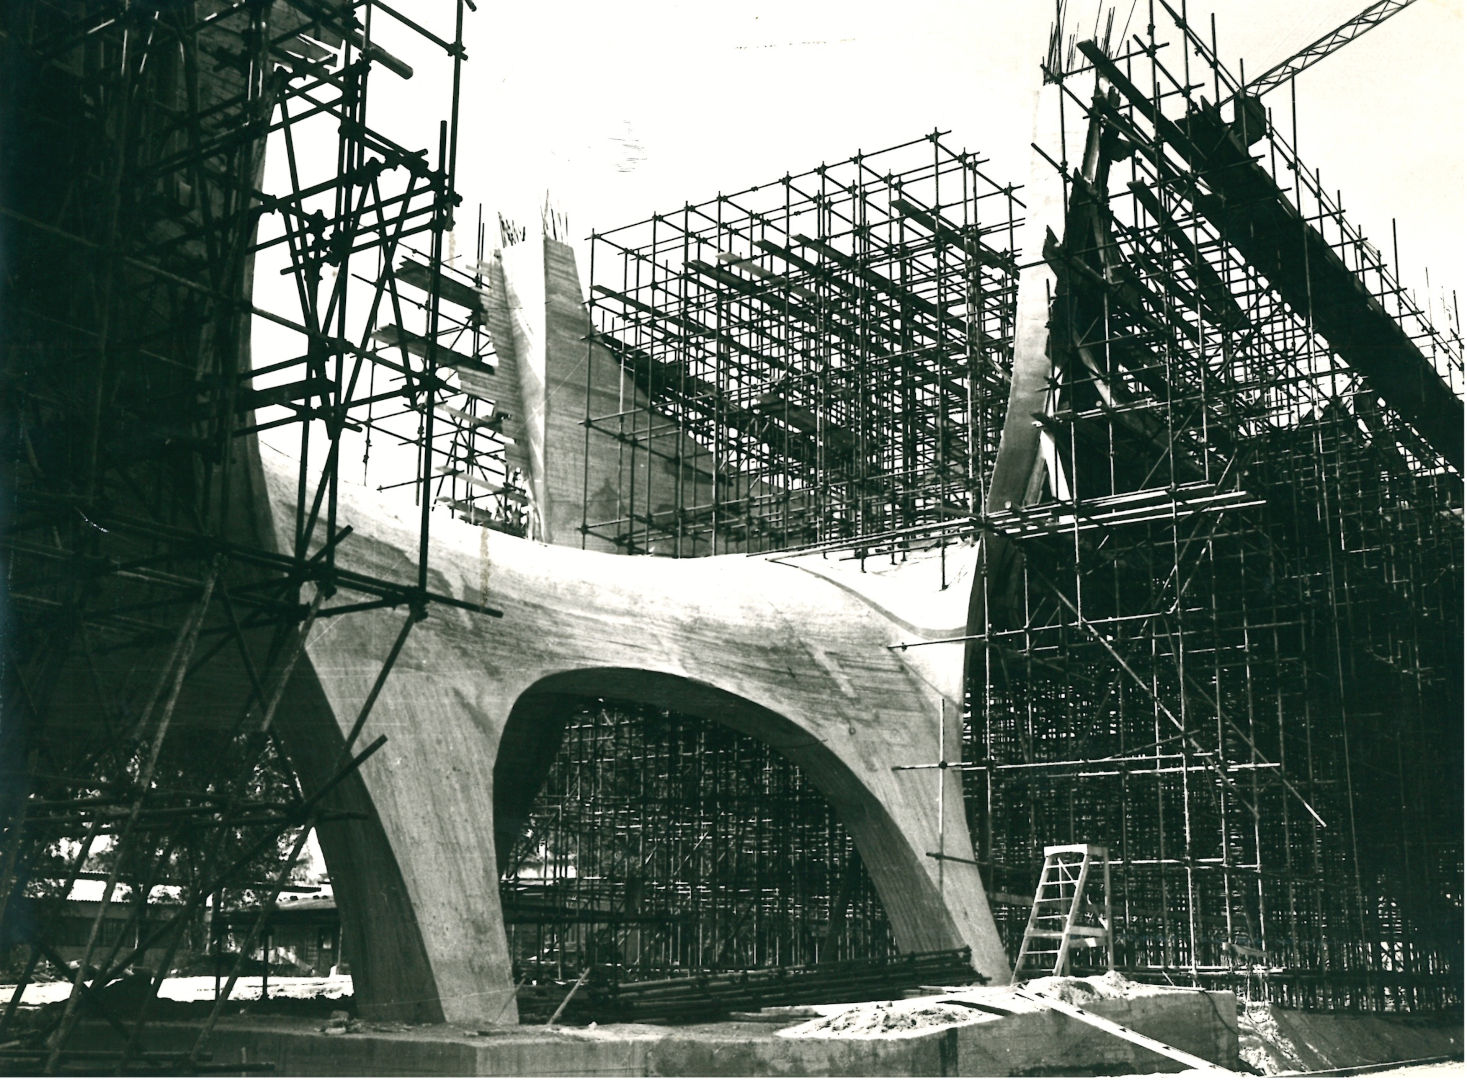 Fig. 5 - PONTE SUL BASENTO, POTENZA, 1967-1980, CANTIERE, ARCHIVIO SERGIO MUSMECI E ZENAIDE ZANINI, MAXXI MUSEO NAZIONALE DELLE ARTI DEL XXI SECOLO, ROMA. COLLEZIONE MAXXI ARCHITETTURA. Testimonianza del massiccio cantiere di legno utilizzato per la costruzione del Ponte sul Basento